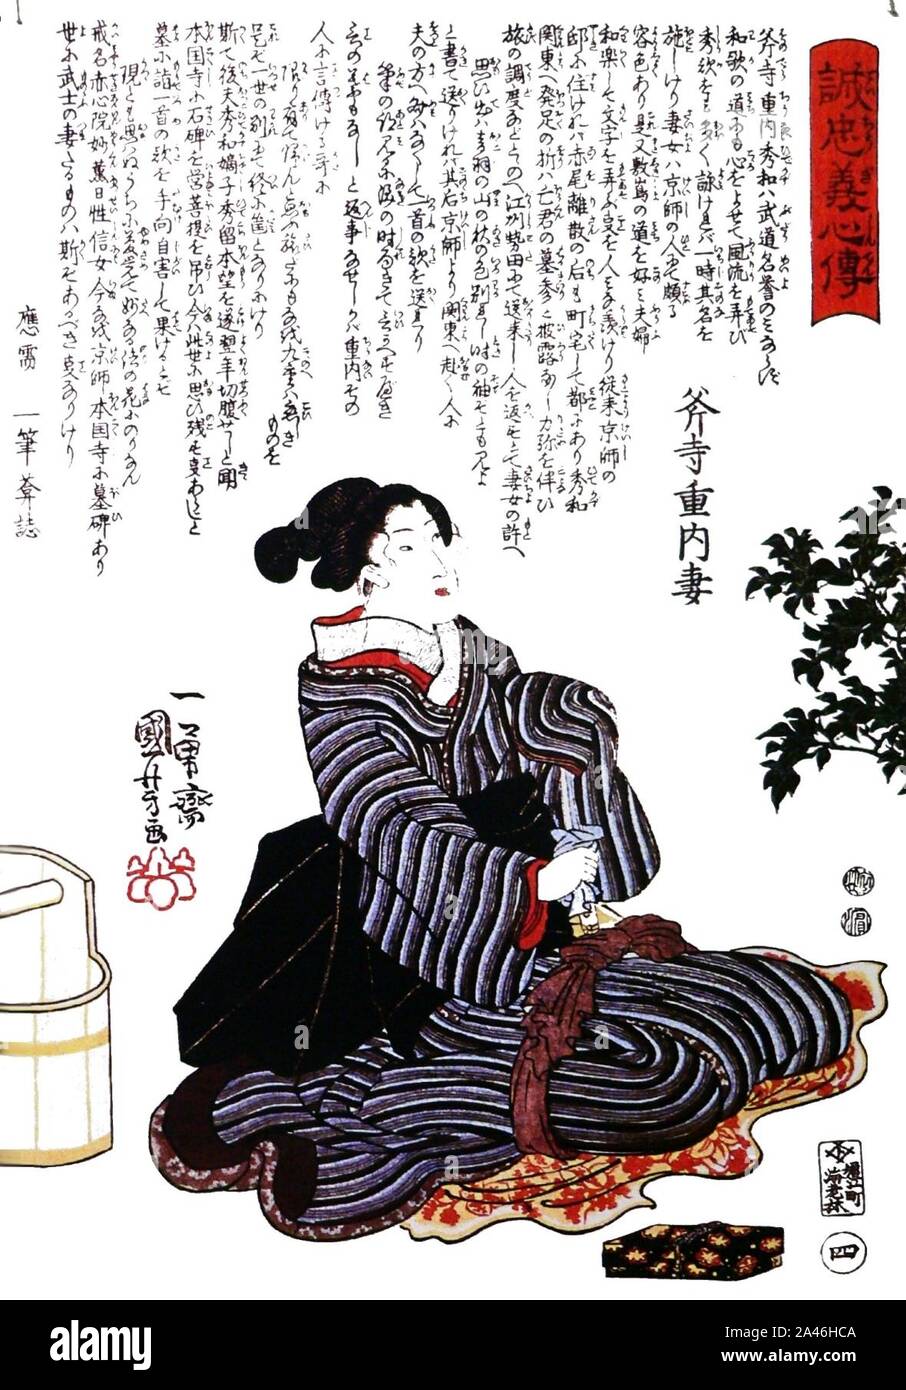 Femme-47-ronin-seppuku-p1000701. Stock Photo